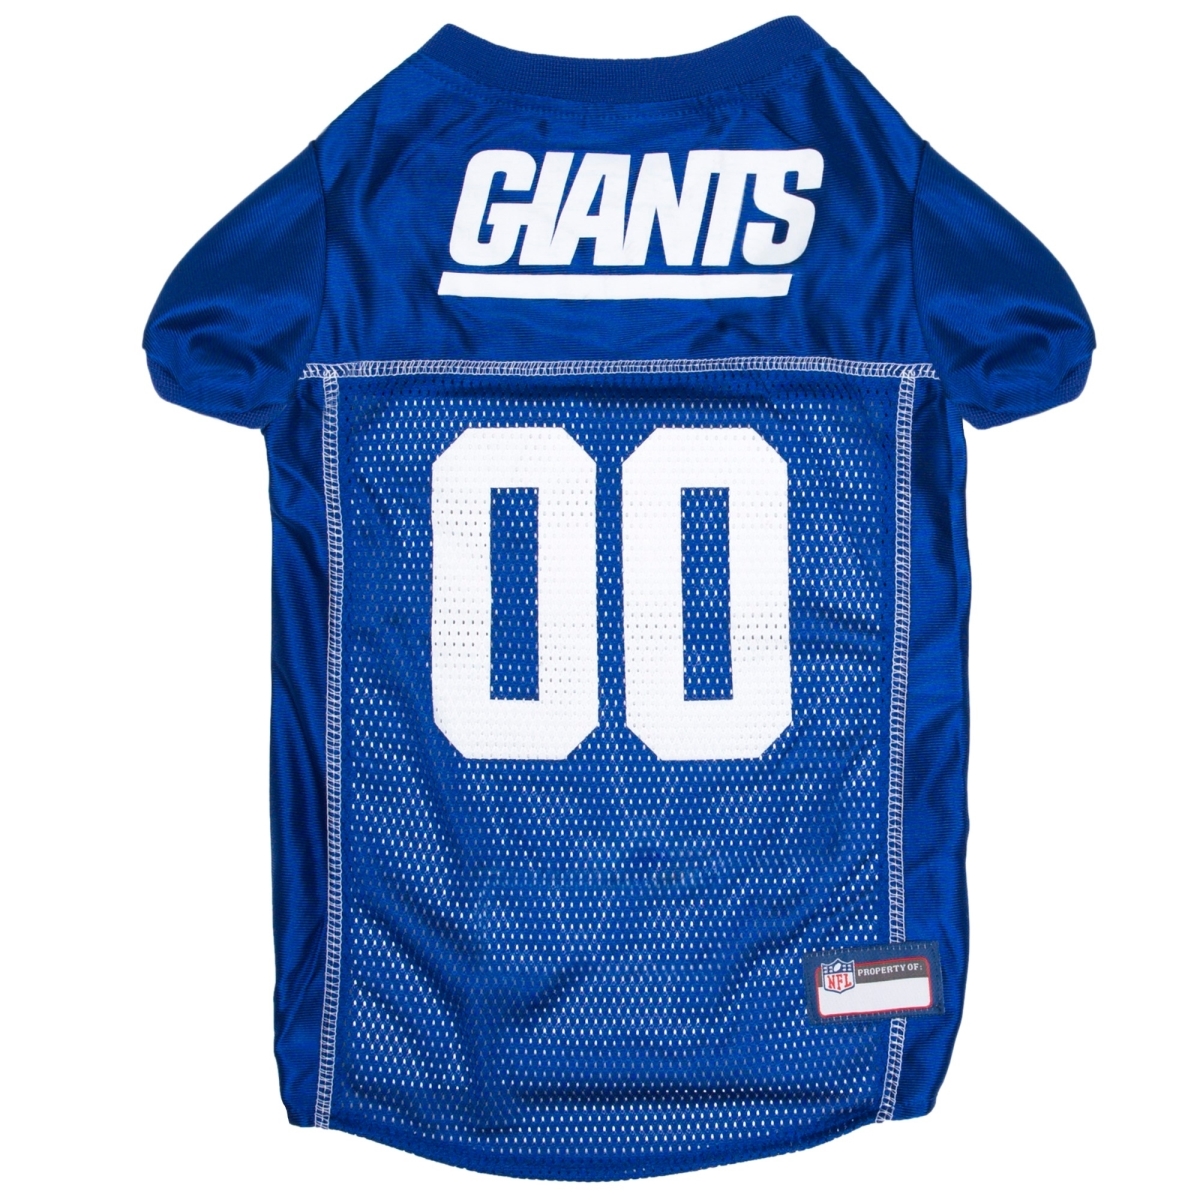 Dgnyg-4006-s New York Giants Dog Jersey, Blue - Small